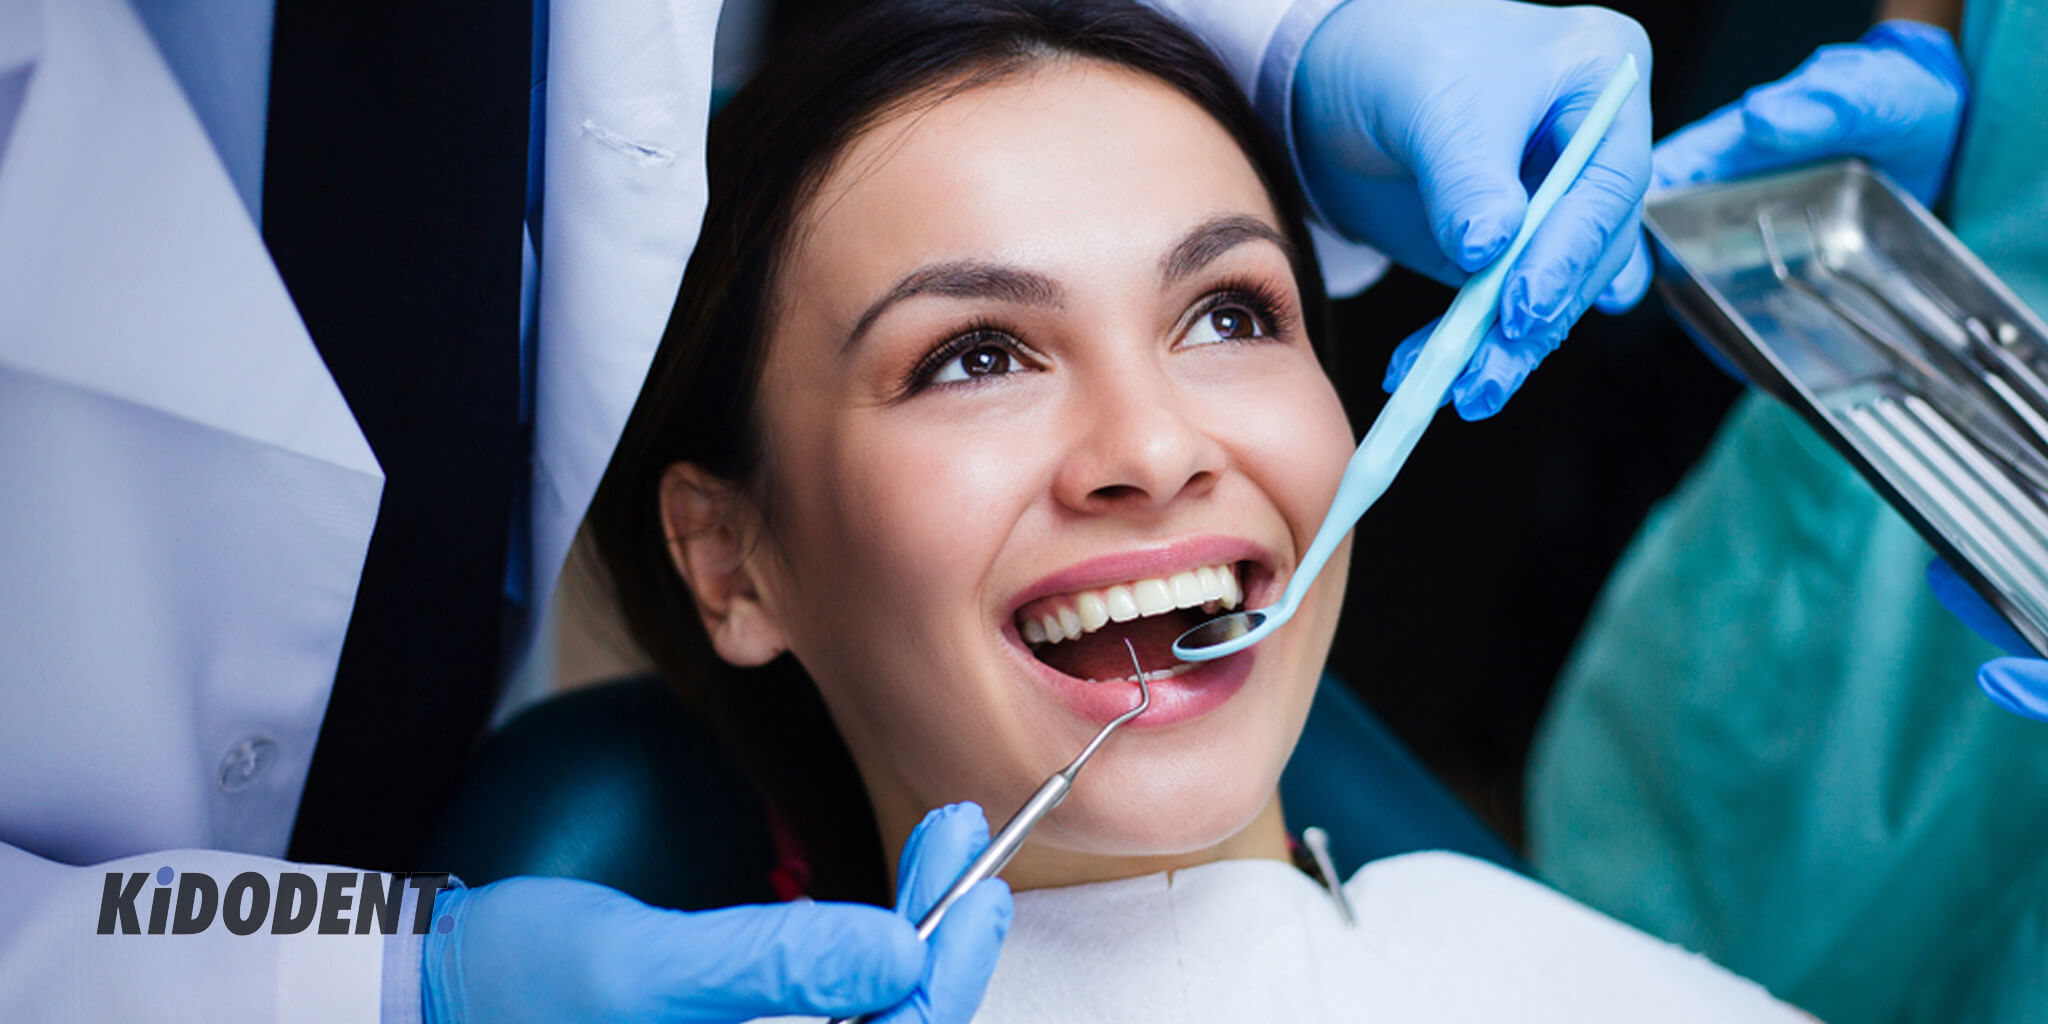 ریشه دندان: درباره متخصص کانال ریشه بیشتر بدانید